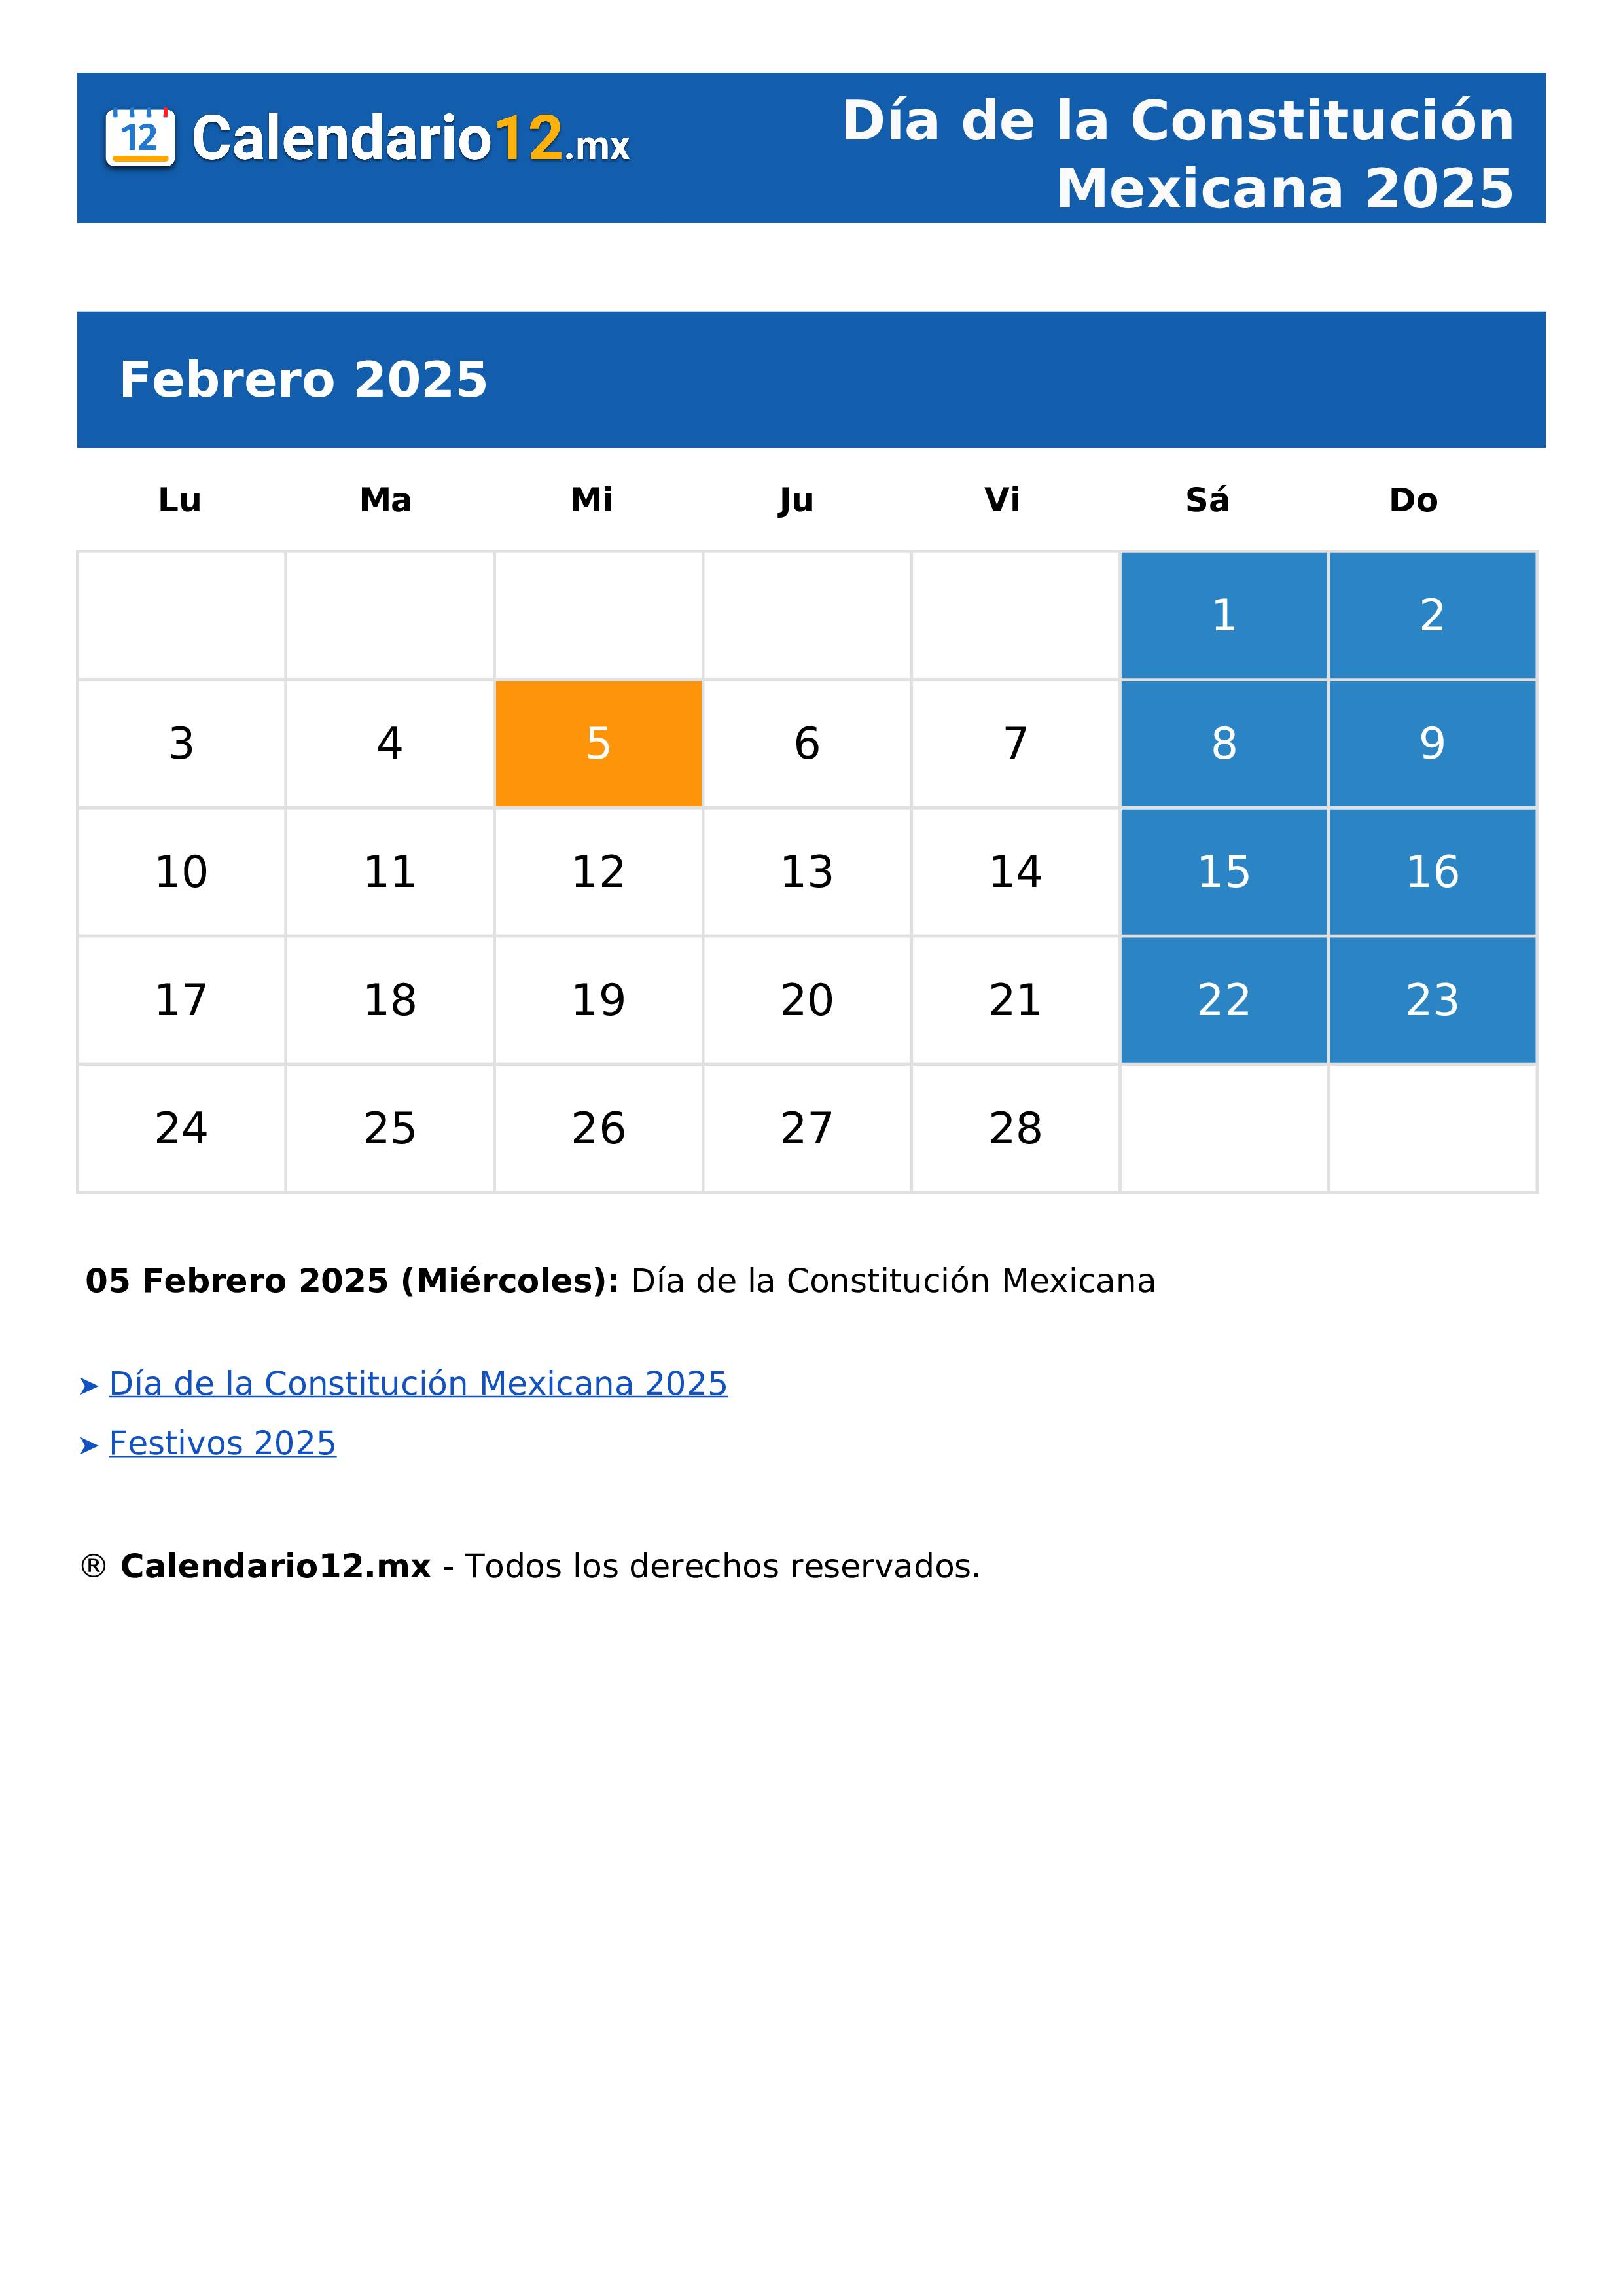 Día de la Constitución Mexicana 2025